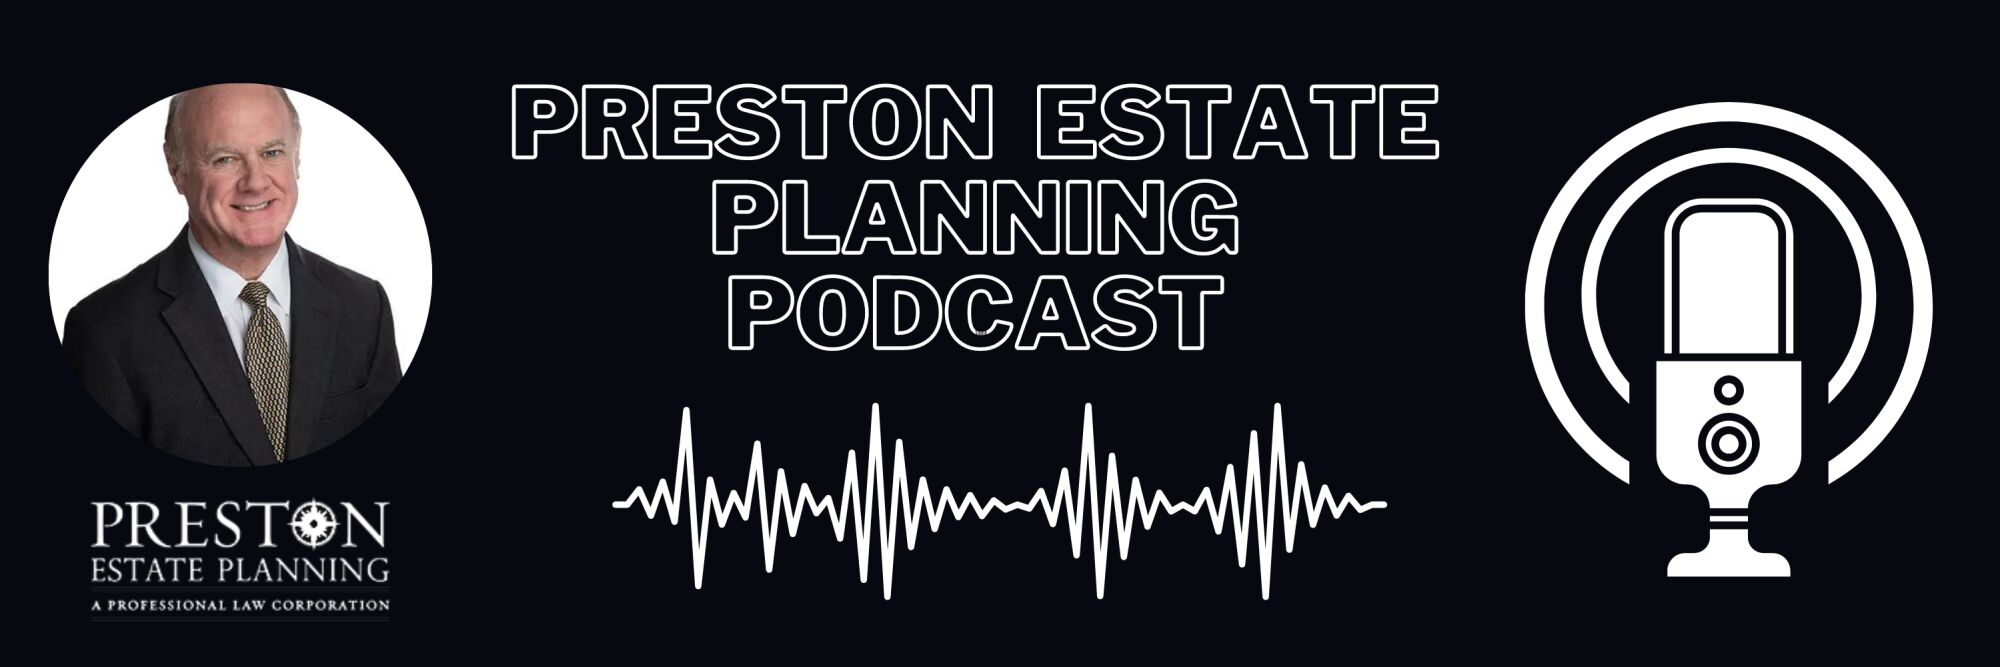 Preston Estate Planning Podcast Lead